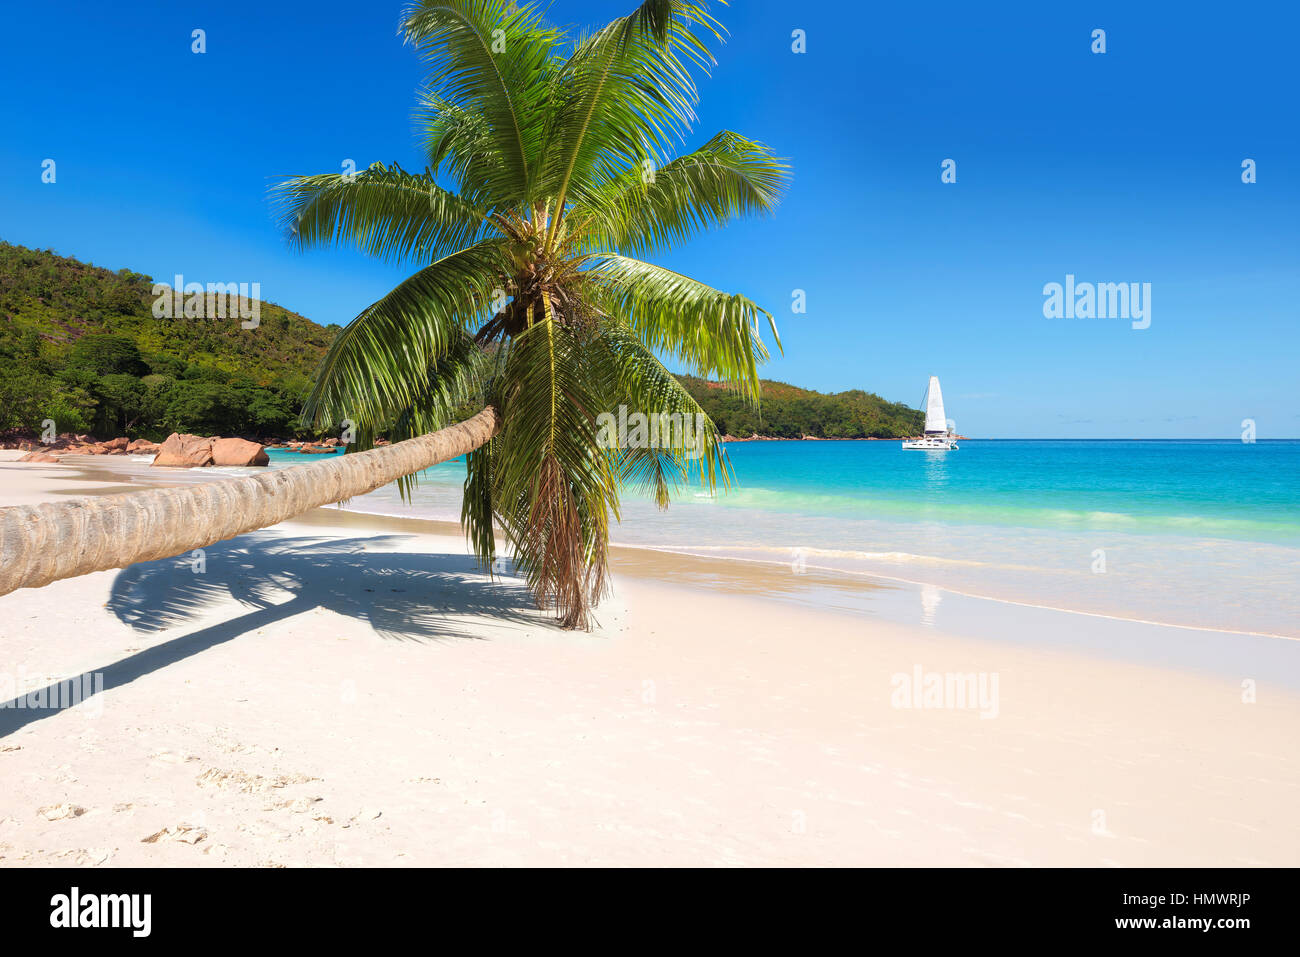 Palme am tropischen Strand. Stockfoto